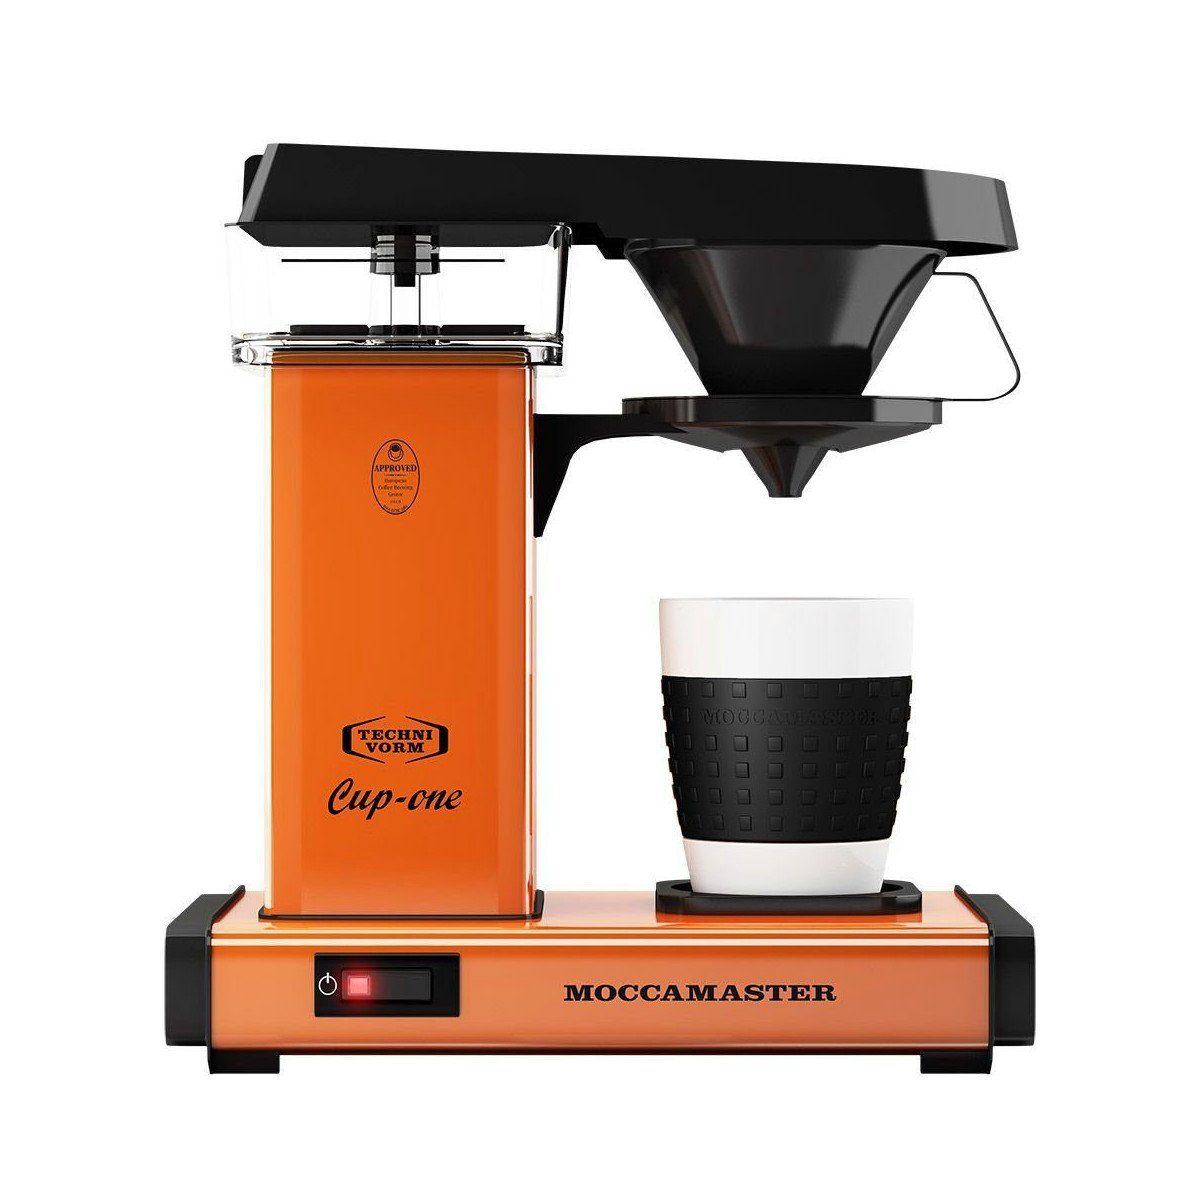 92-96 Kaffeetemperatur C Cup-one, C Moccamaster ° Orange 80-85 und ° Brühtemperatur Filterkaffeemaschine 1,